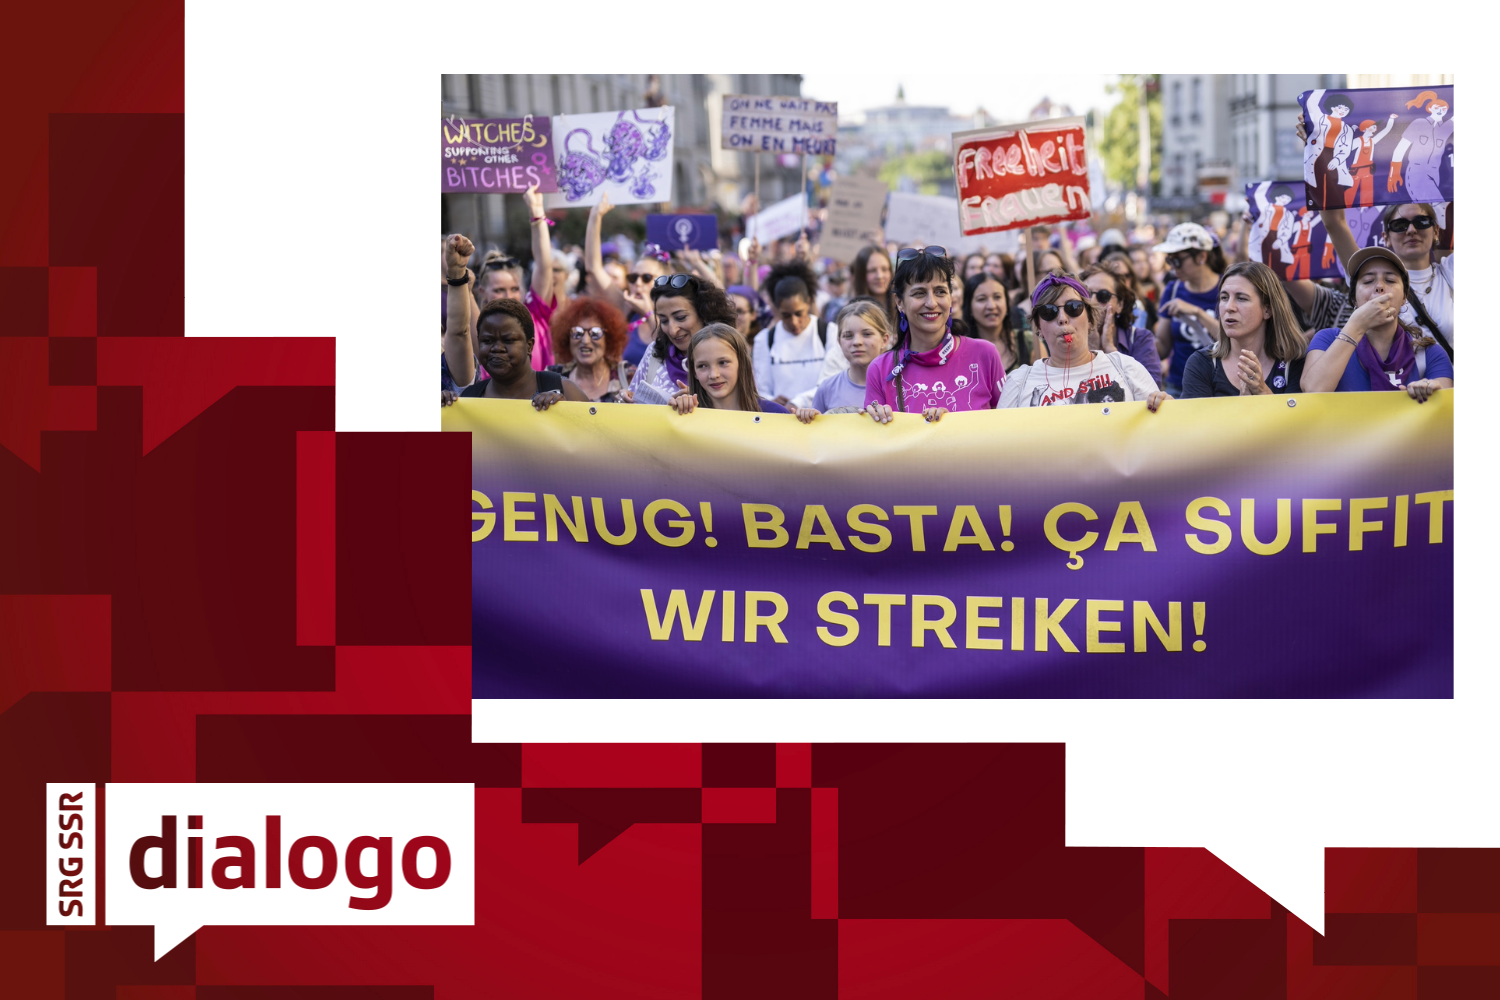 La testa della grande manifestazione per lo sciopero delle donne con Vania Alleva, presidente del sindacato Unia, al centro, si muove verso la Bundesplatz, mercoledì 14 giugno 2023 a Berna.